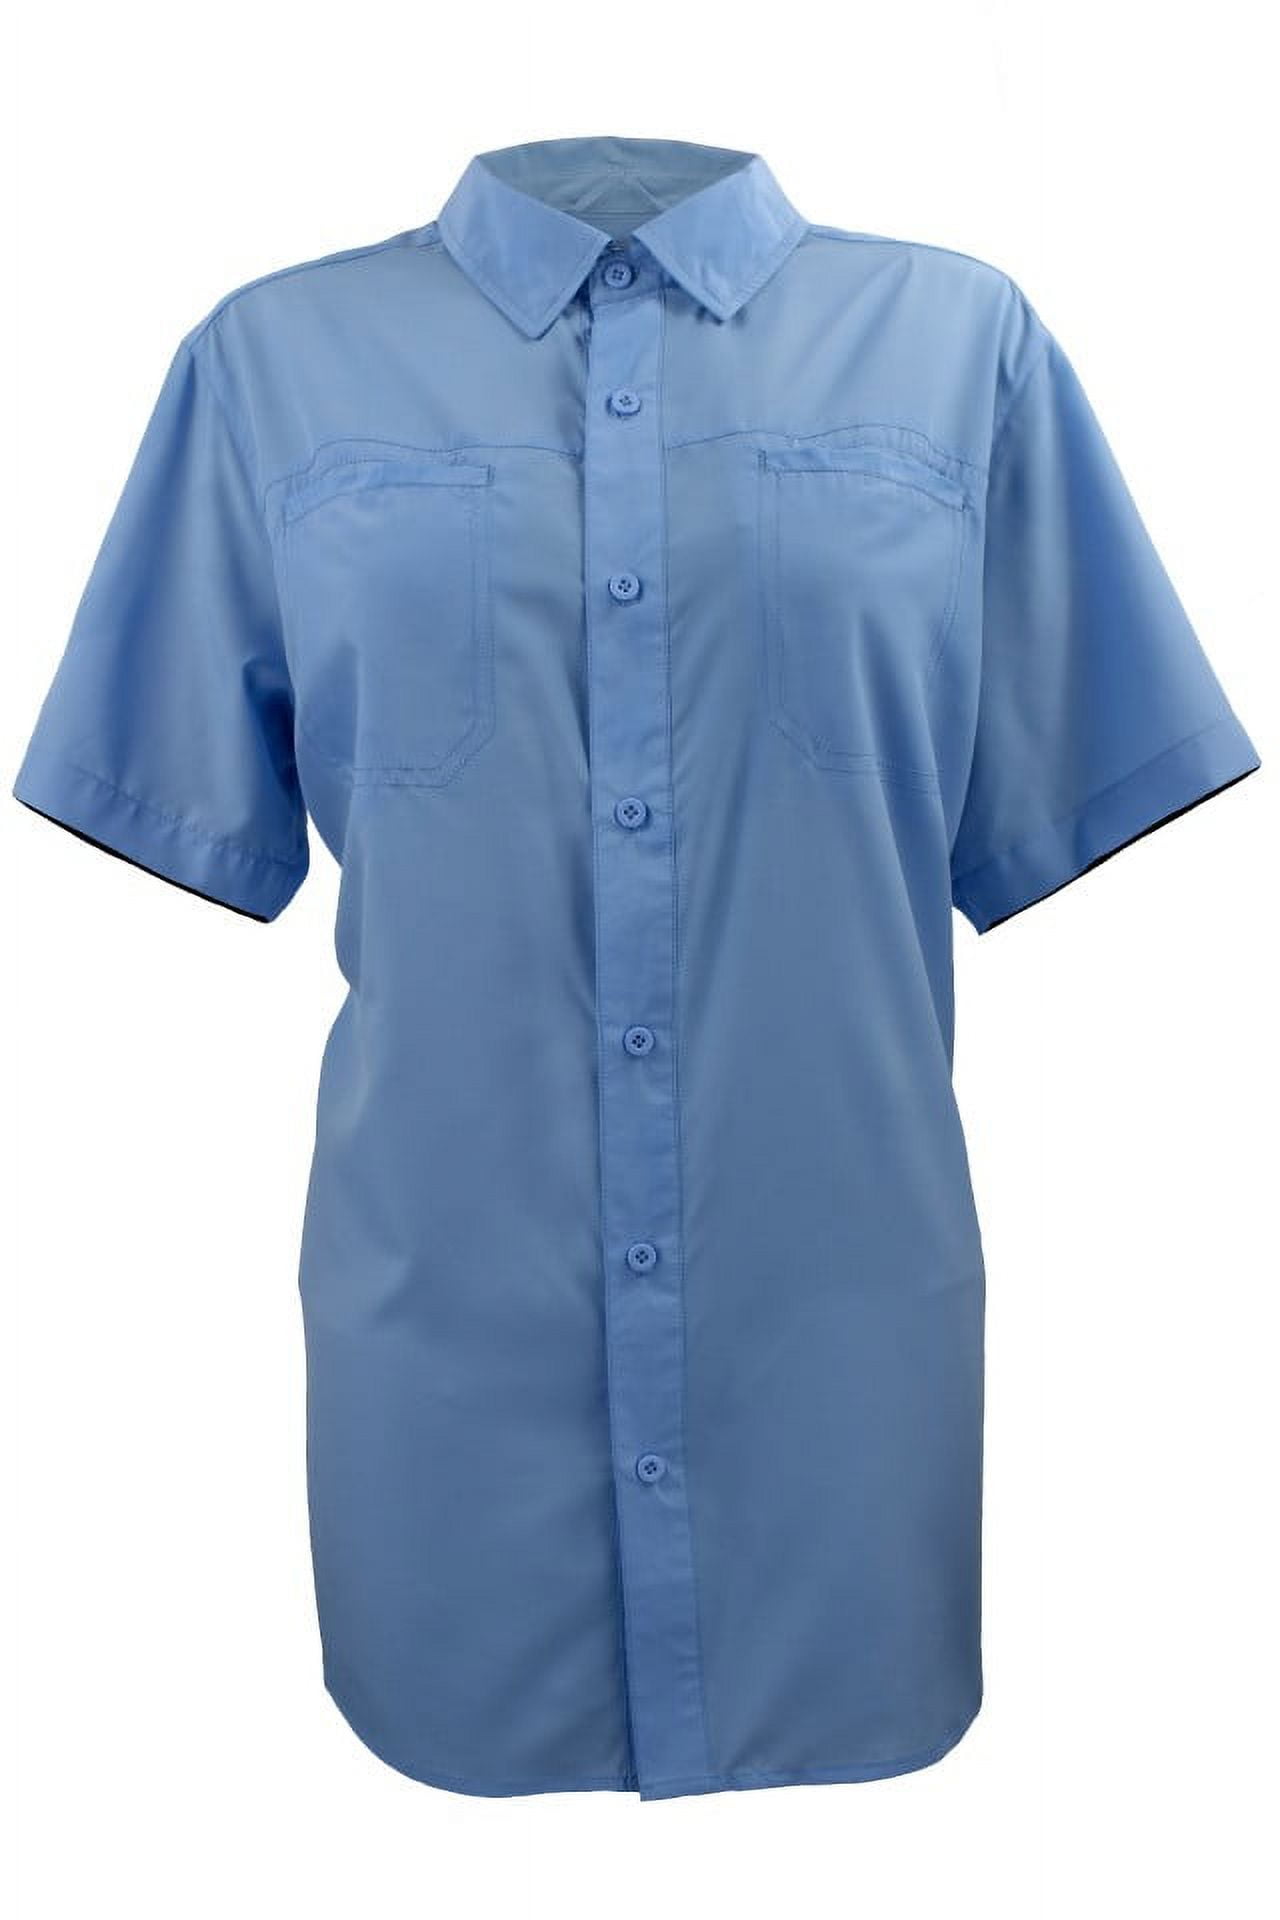 Fintech Women's Short Sleeve Fishing Shirt - Small, Blue